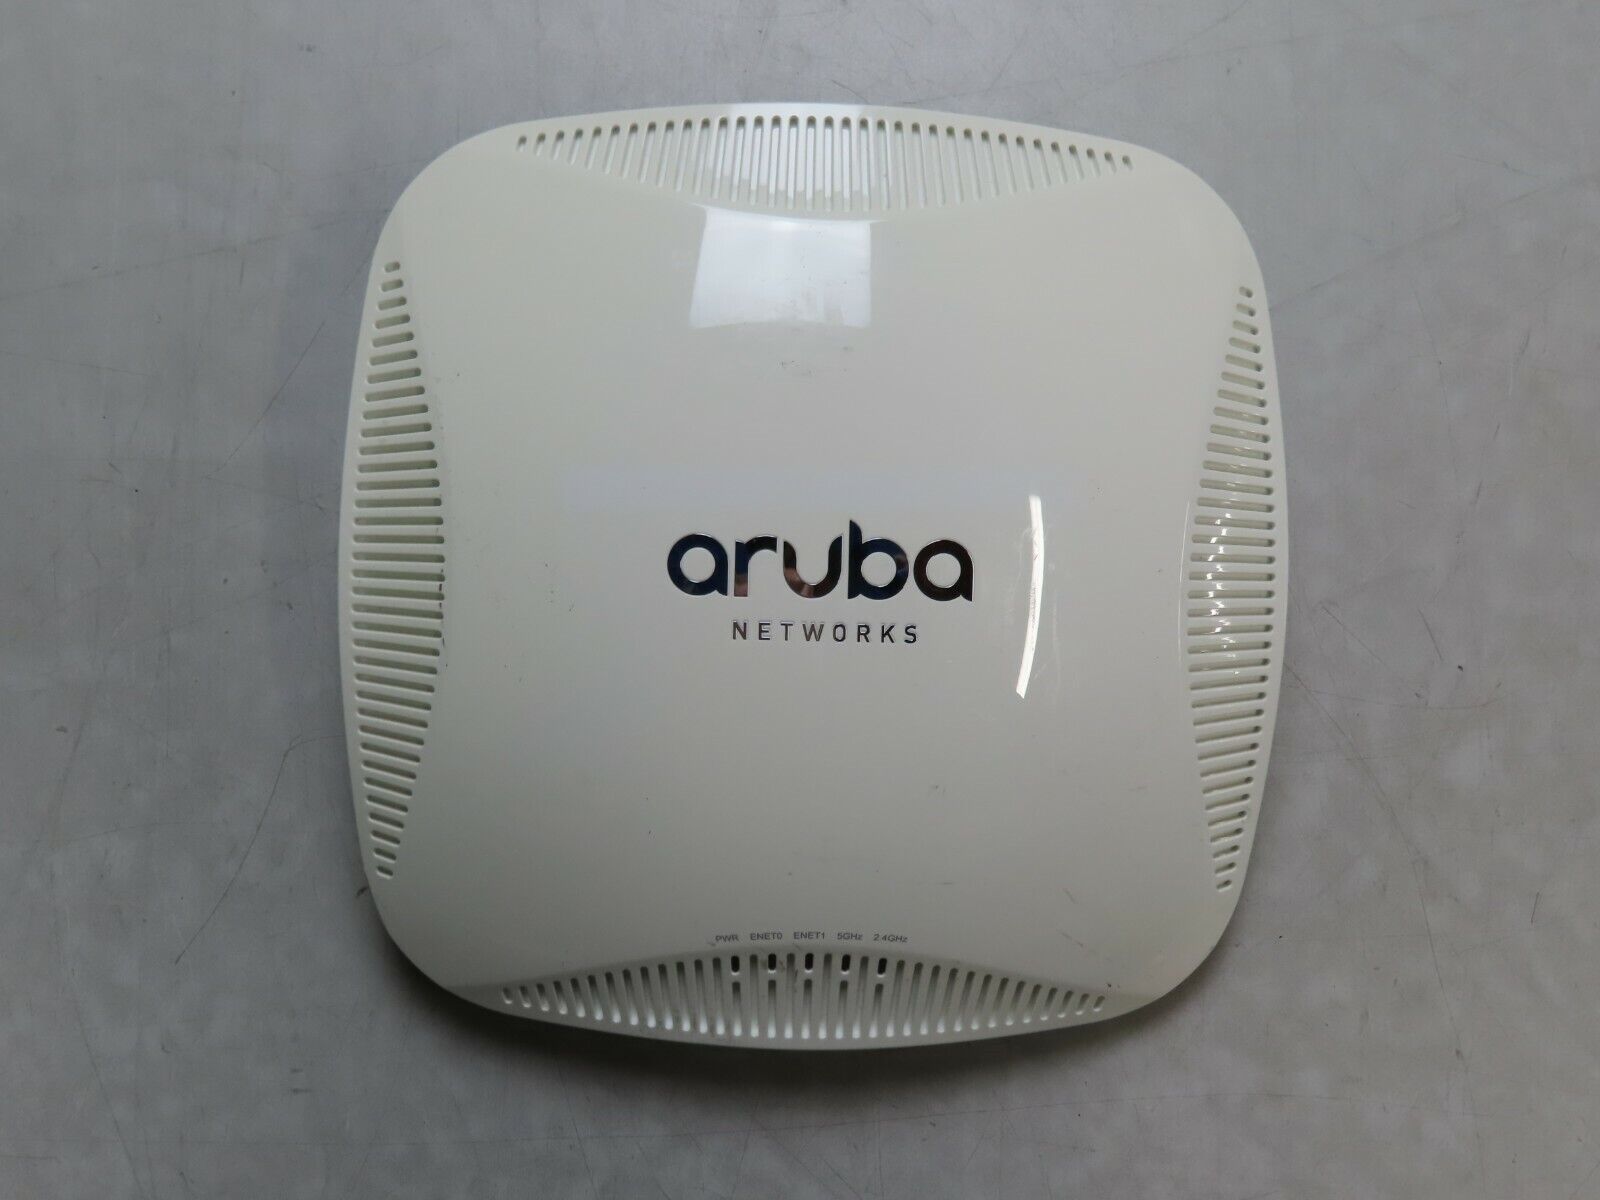  lot of 5 -  Aruba Networks AP-225 Wireless Access Point  Aruba Networks